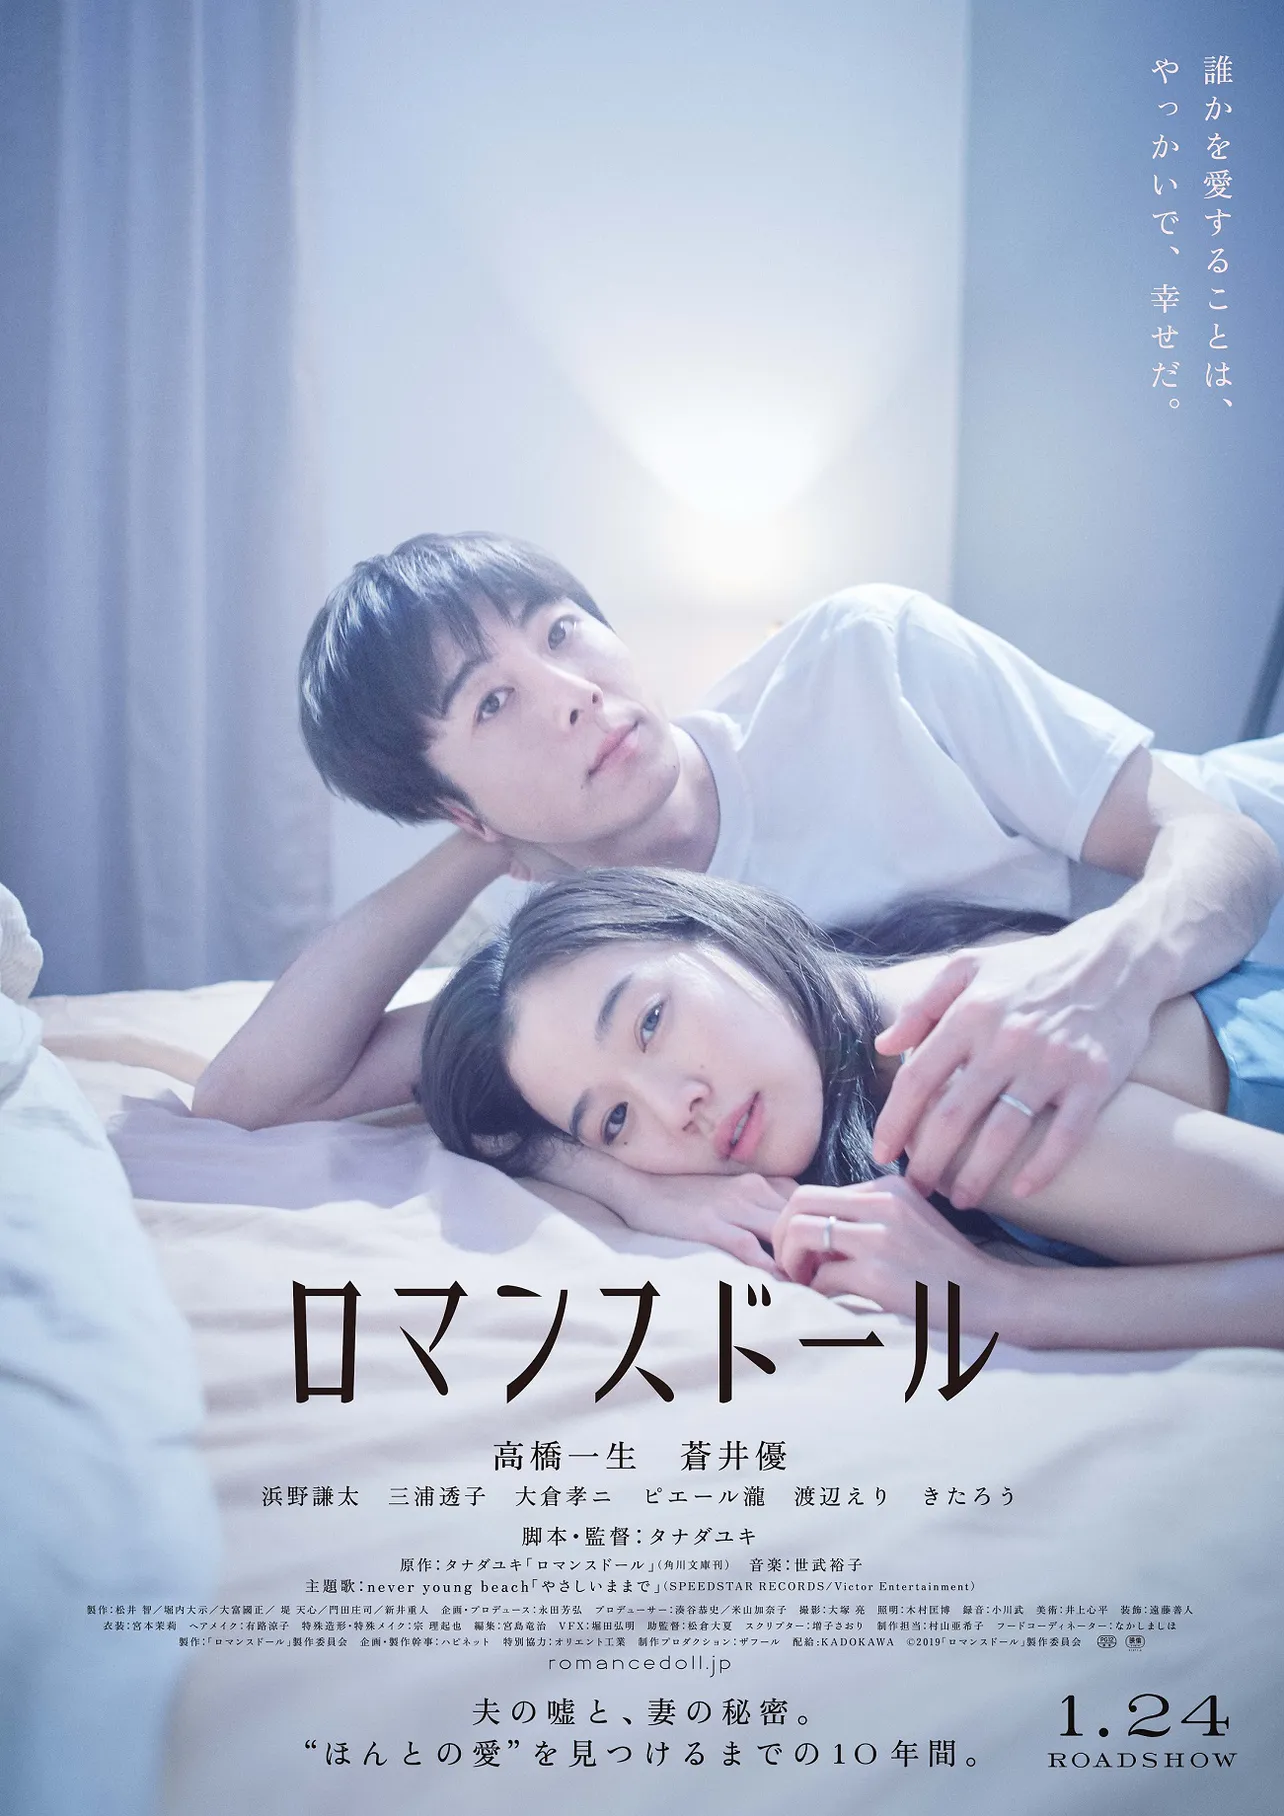 【写真を見る】映画「ロマンスドール」のポスター画像では、夫婦役の高橋一生と蒼井優がベッドの上に